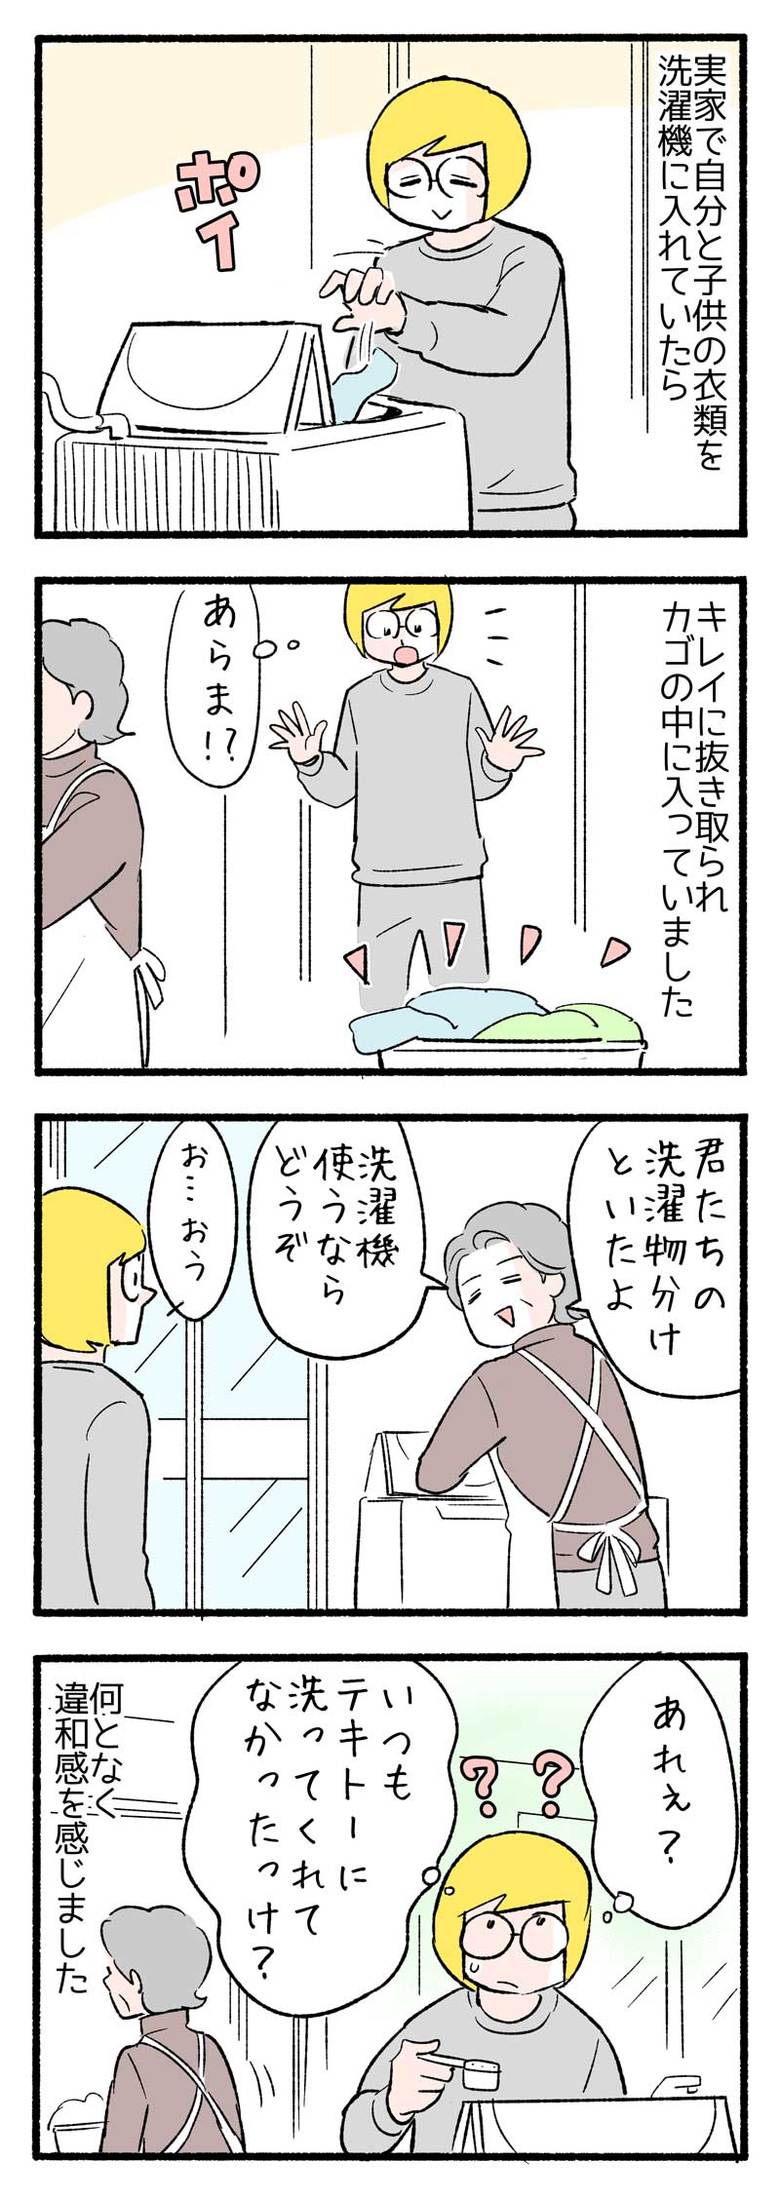 manga-nihipapa21_4